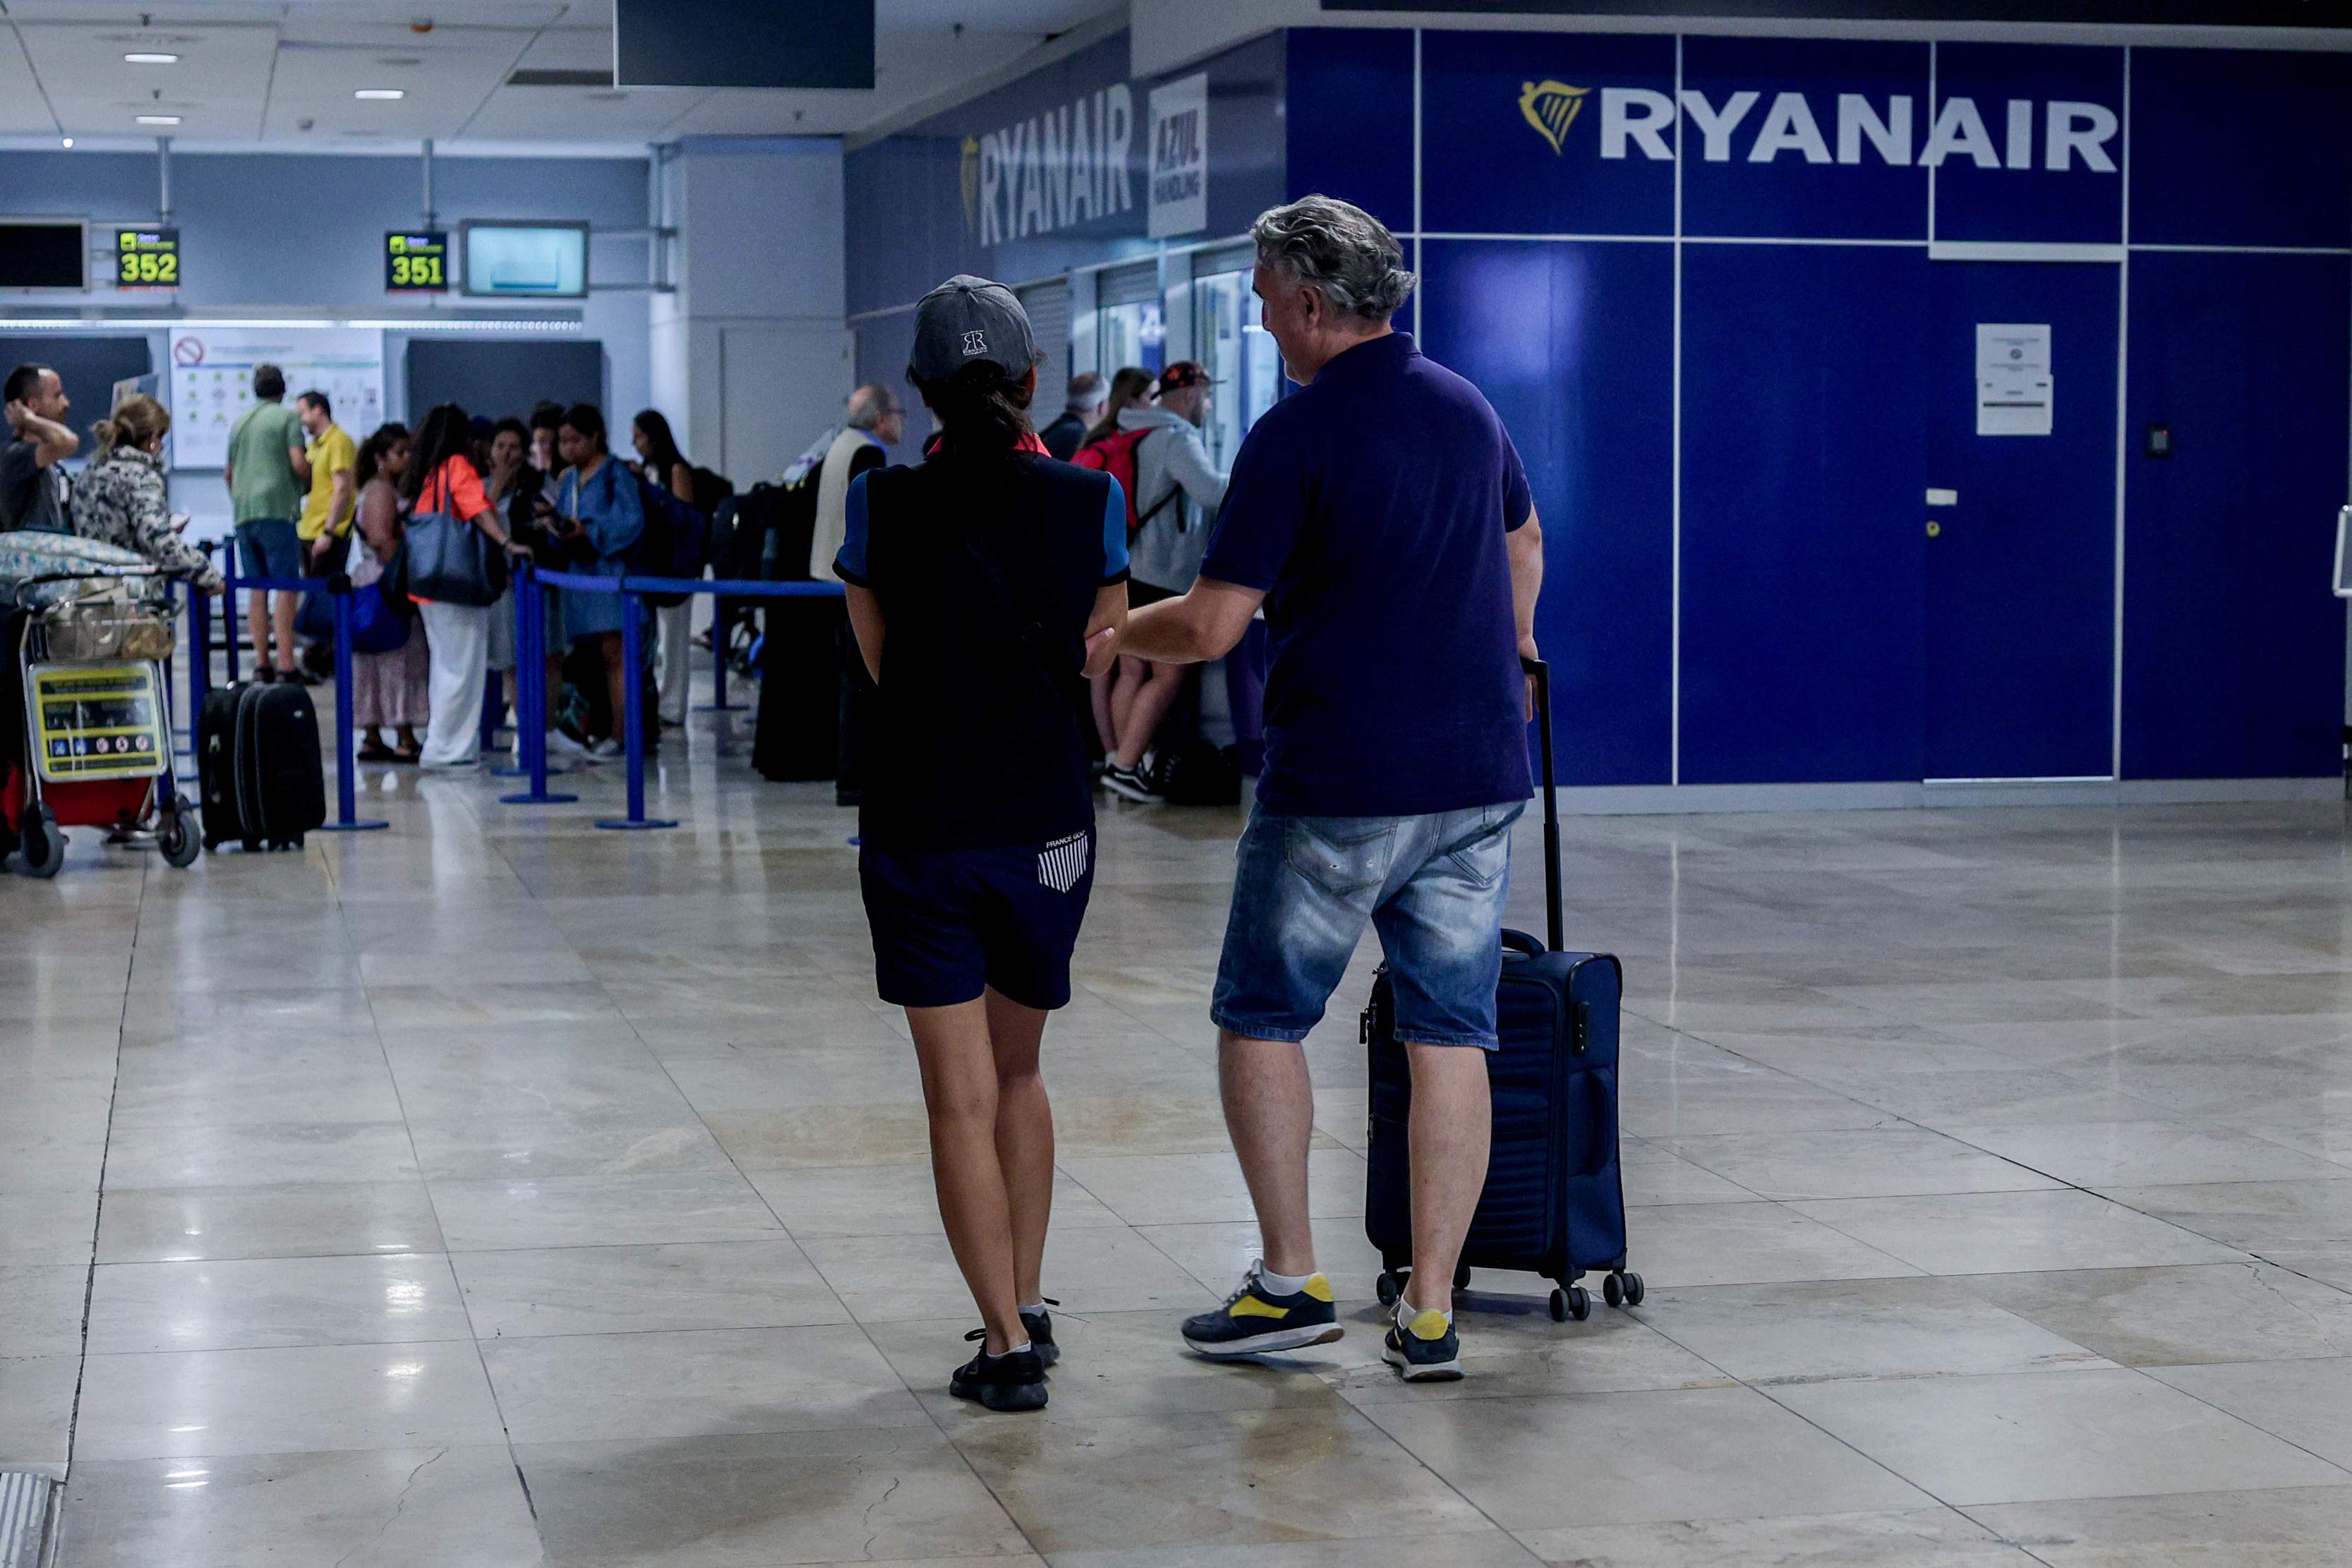 Dos personas se dirigen a facturar al mostrador de Ryanair